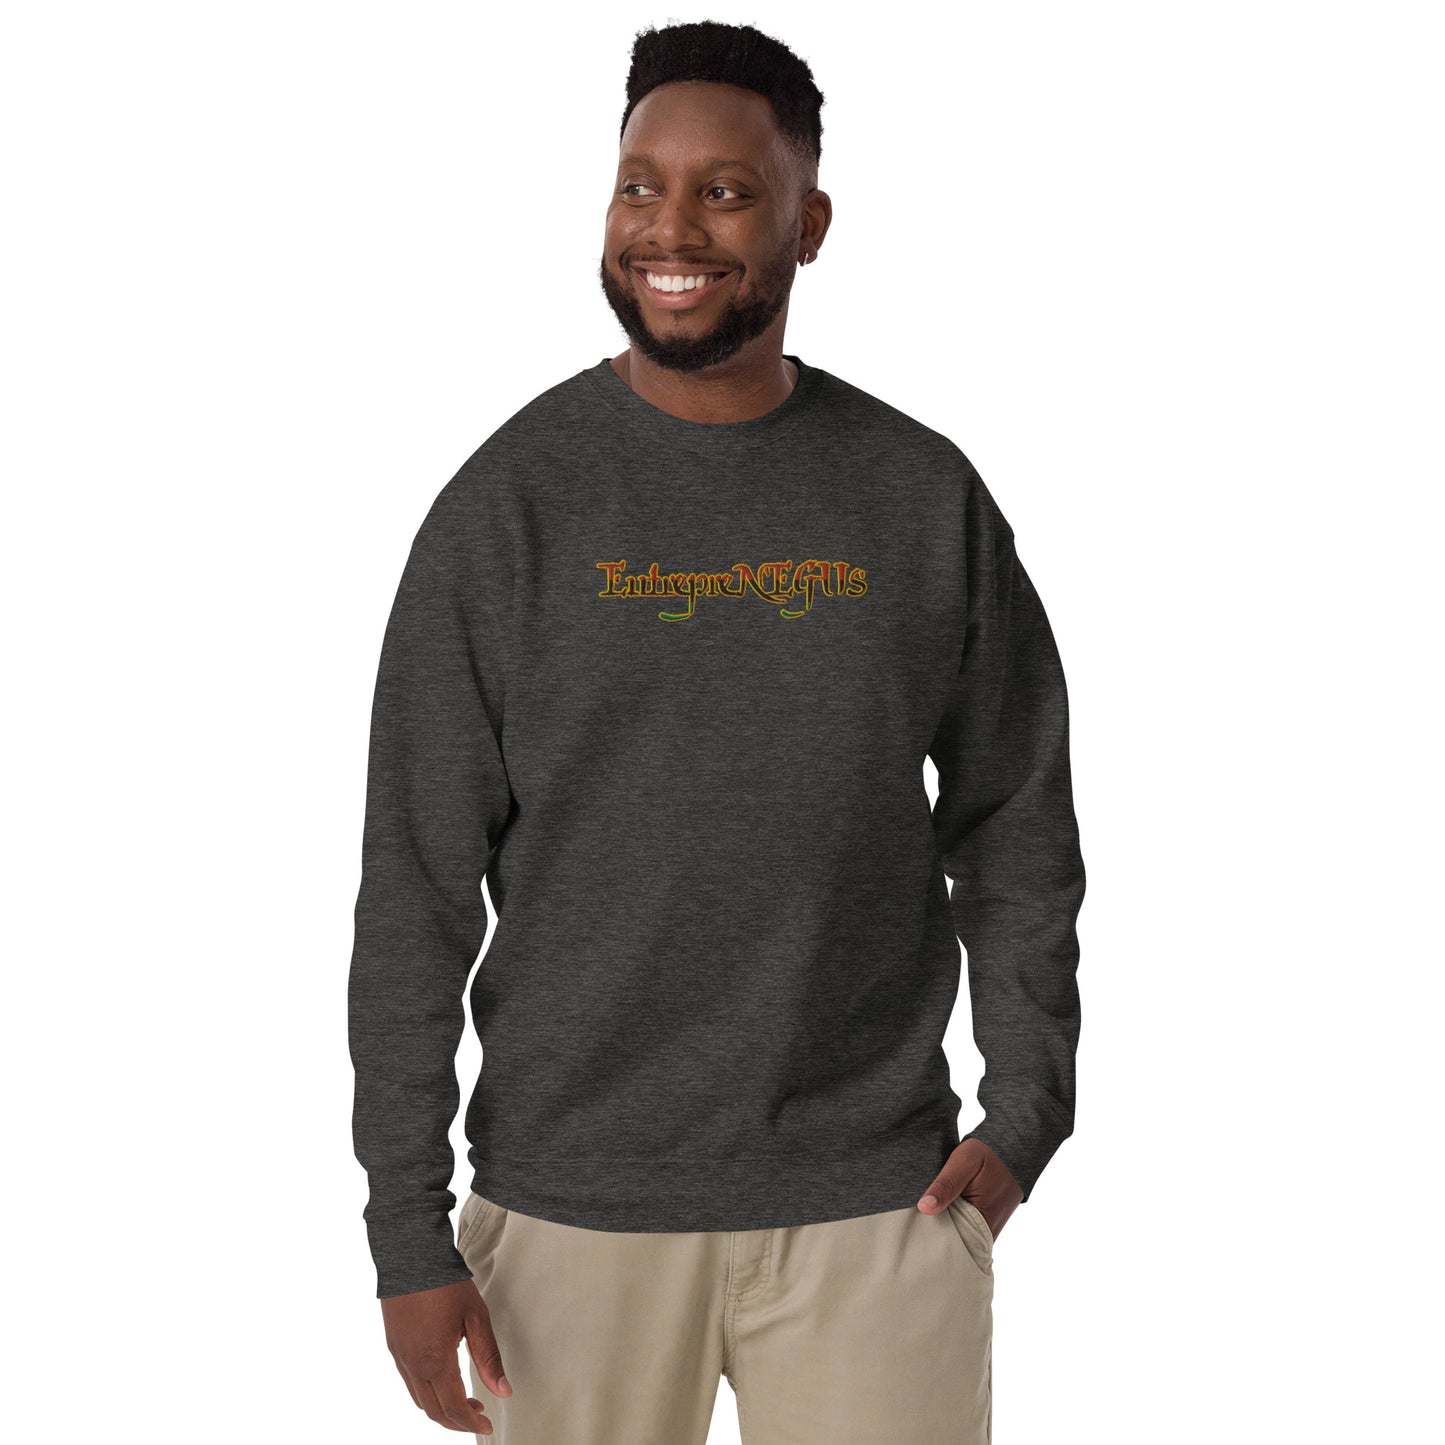 EntrepreNEGUS Unisex Premium Sweatshirt